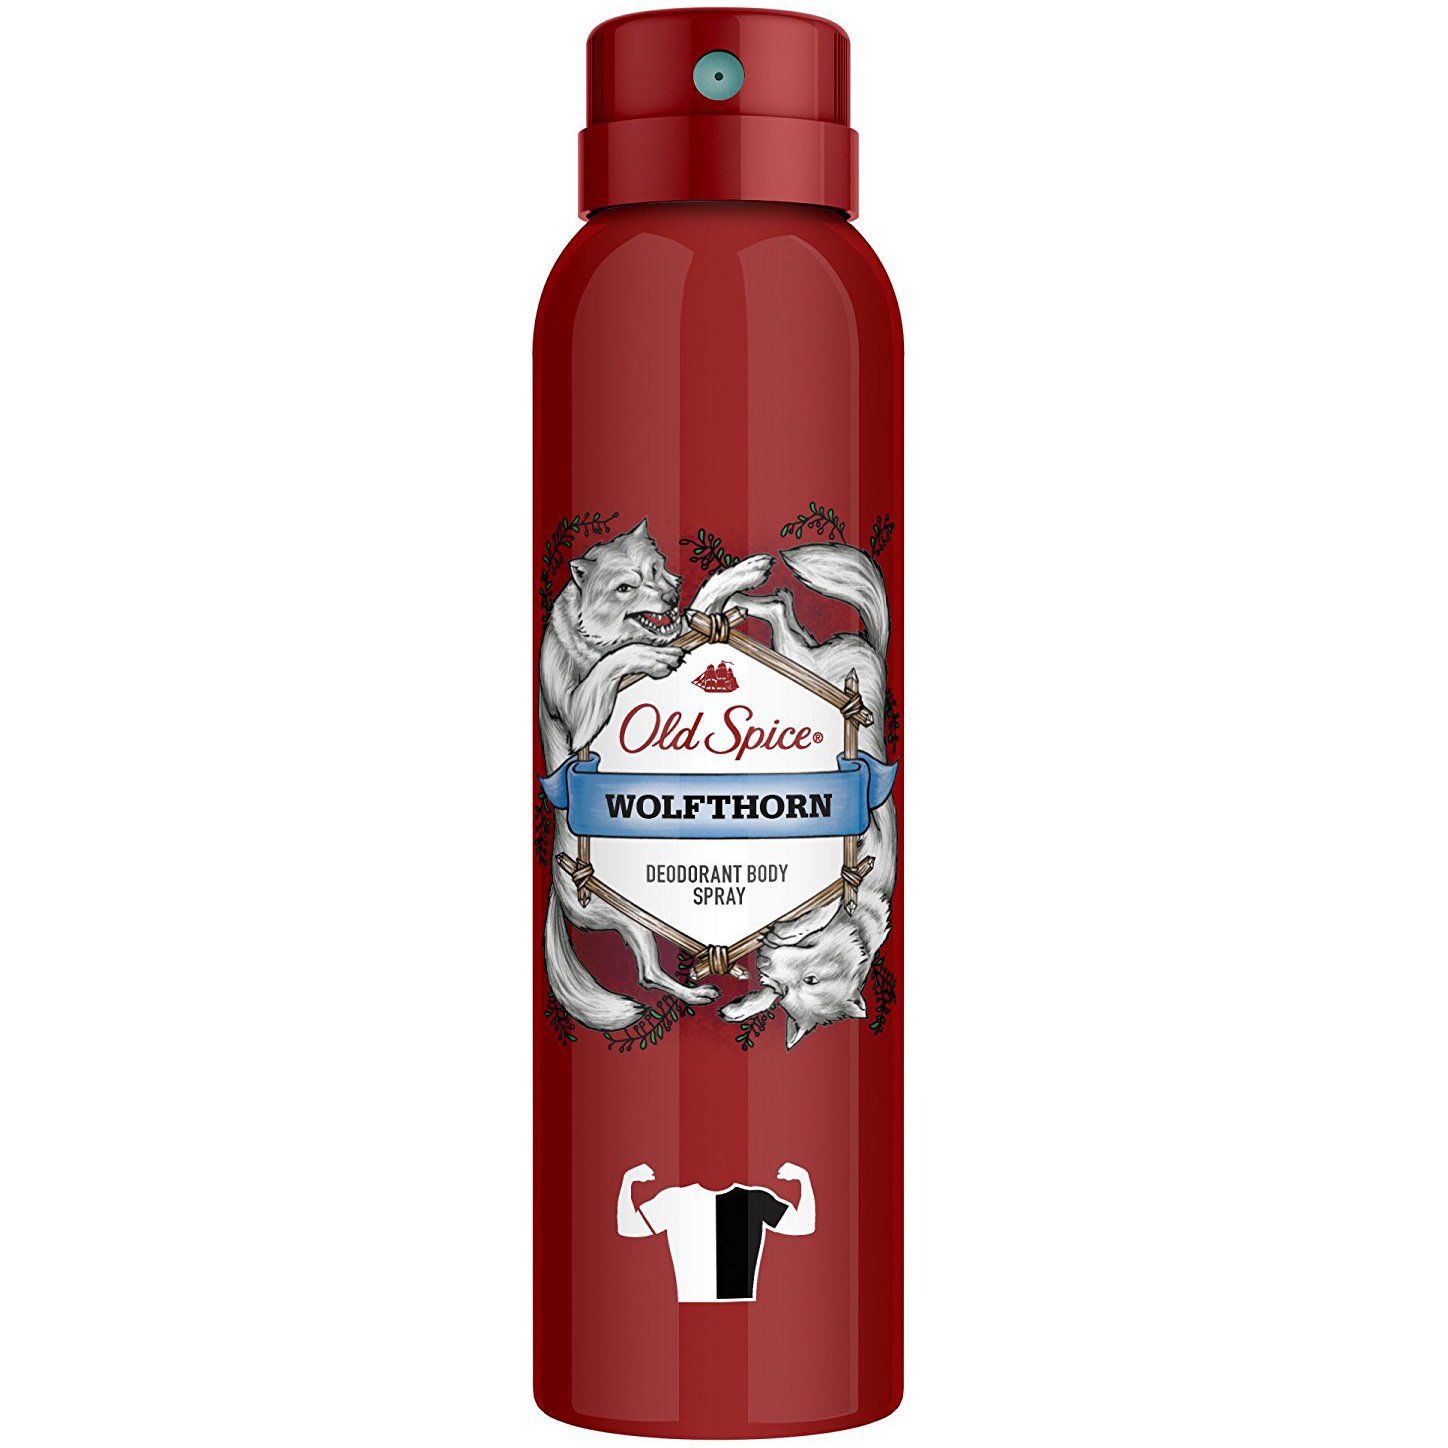 Old Spice Wolfthorn Deodorant Body Spray Αποσμητικό με Δυναμικό Άρωμα Μόνο για Αληθινούς Άντρες 150ml